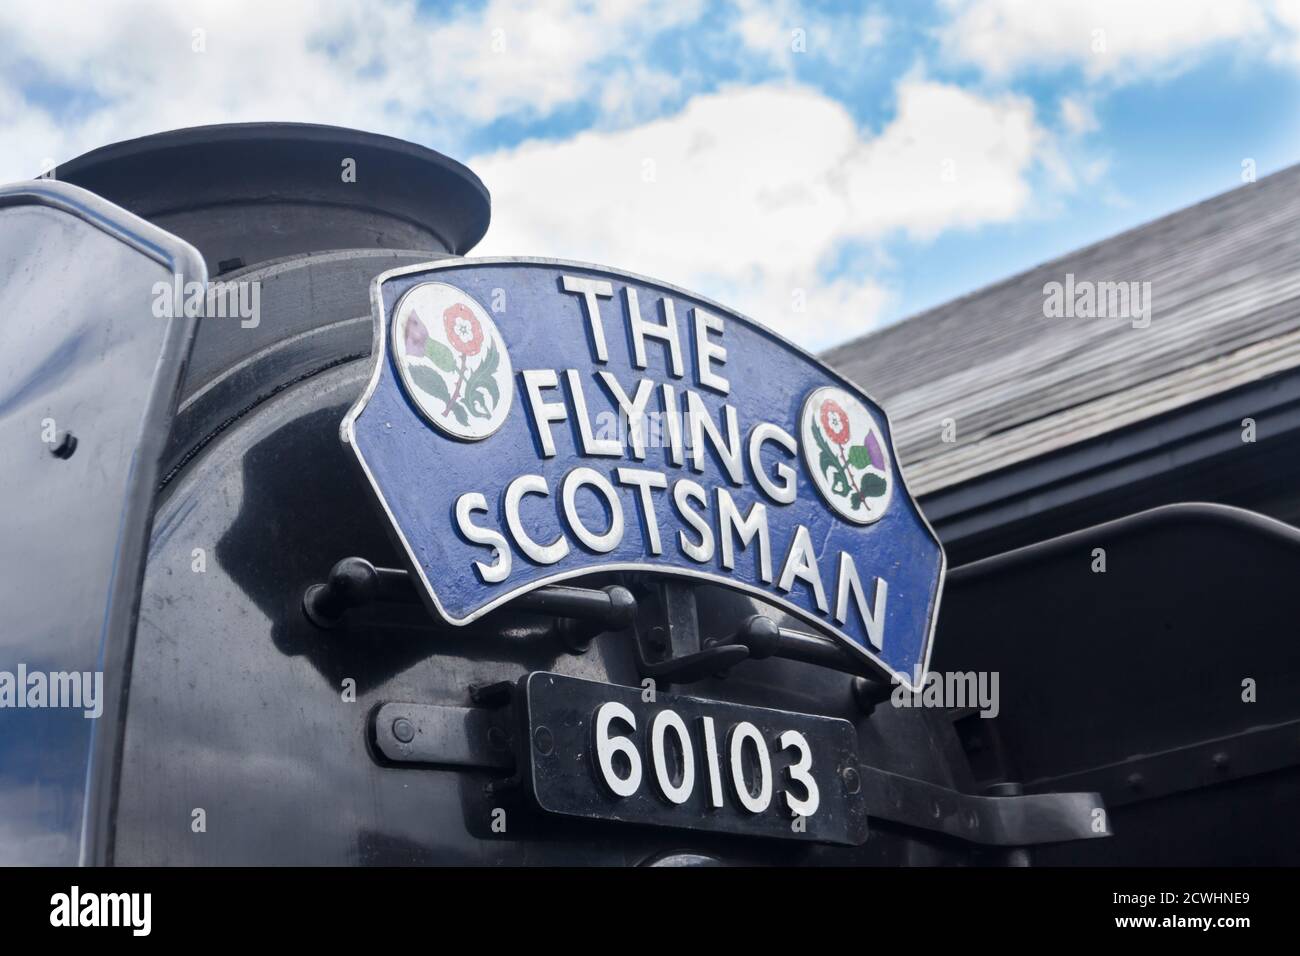 Cabecera de tren de 'The Flying Scotsman', denotando el título del tren nombrado, llevado en la puerta de la máquina de humo de la locomotora de vapor Flying Scotsman. Foto de stock